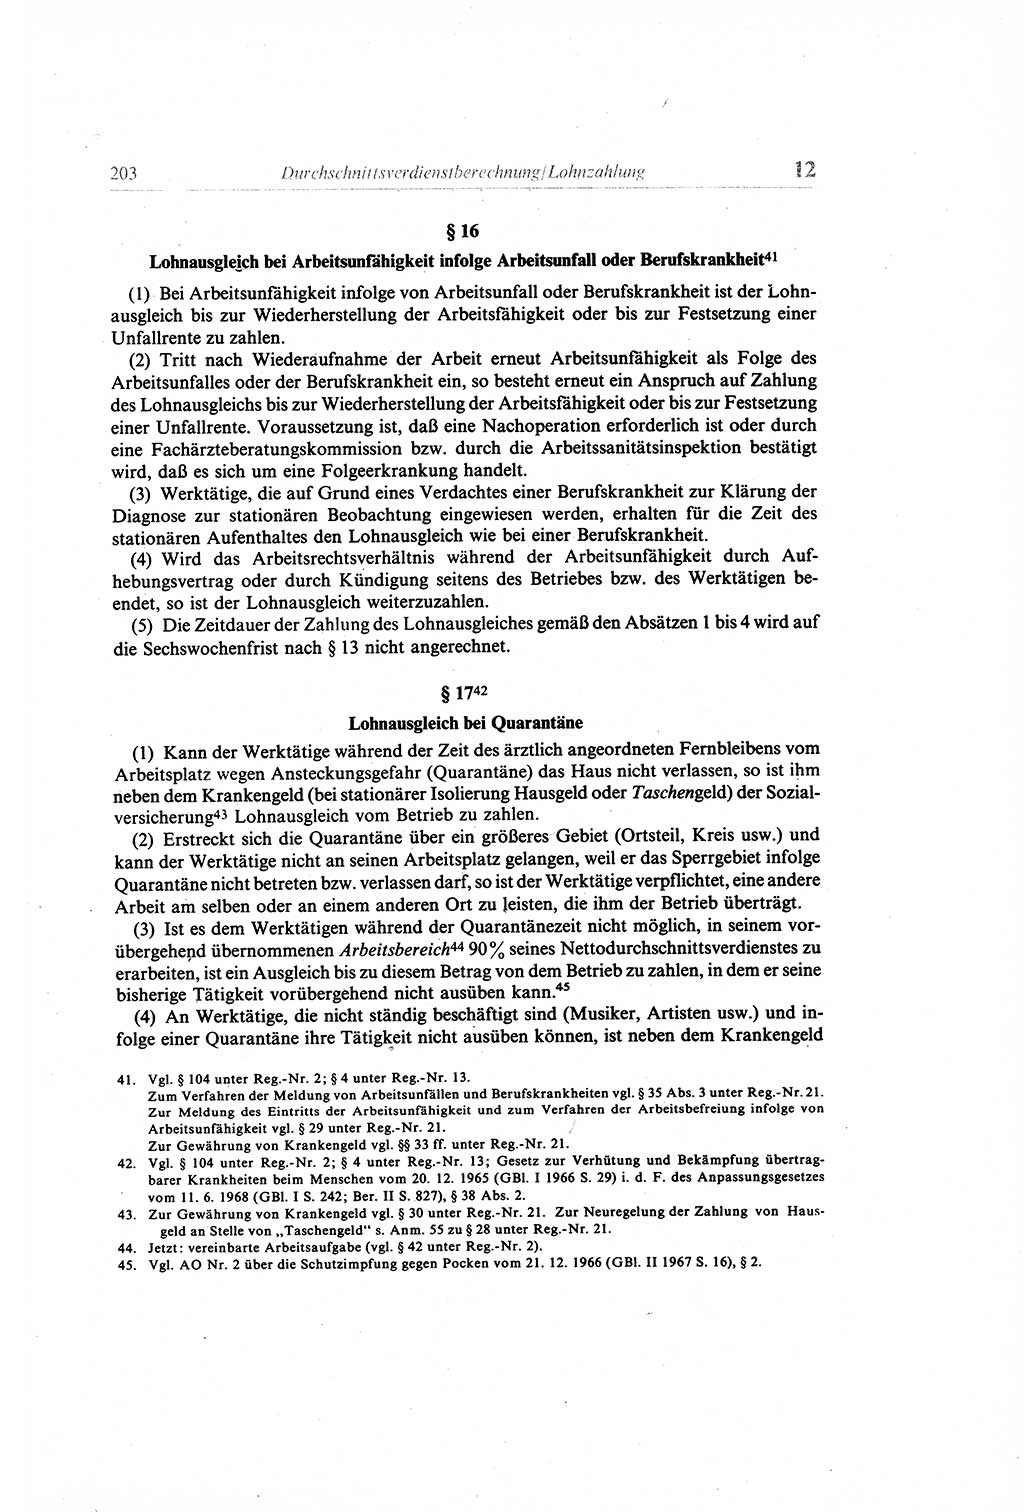 Gesetzbuch der Arbeit (GBA) und andere ausgewählte rechtliche Bestimmungen [Deutsche Demokratische Republik (DDR)] 1968, Seite 203 (GBA DDR 1968, S. 203)